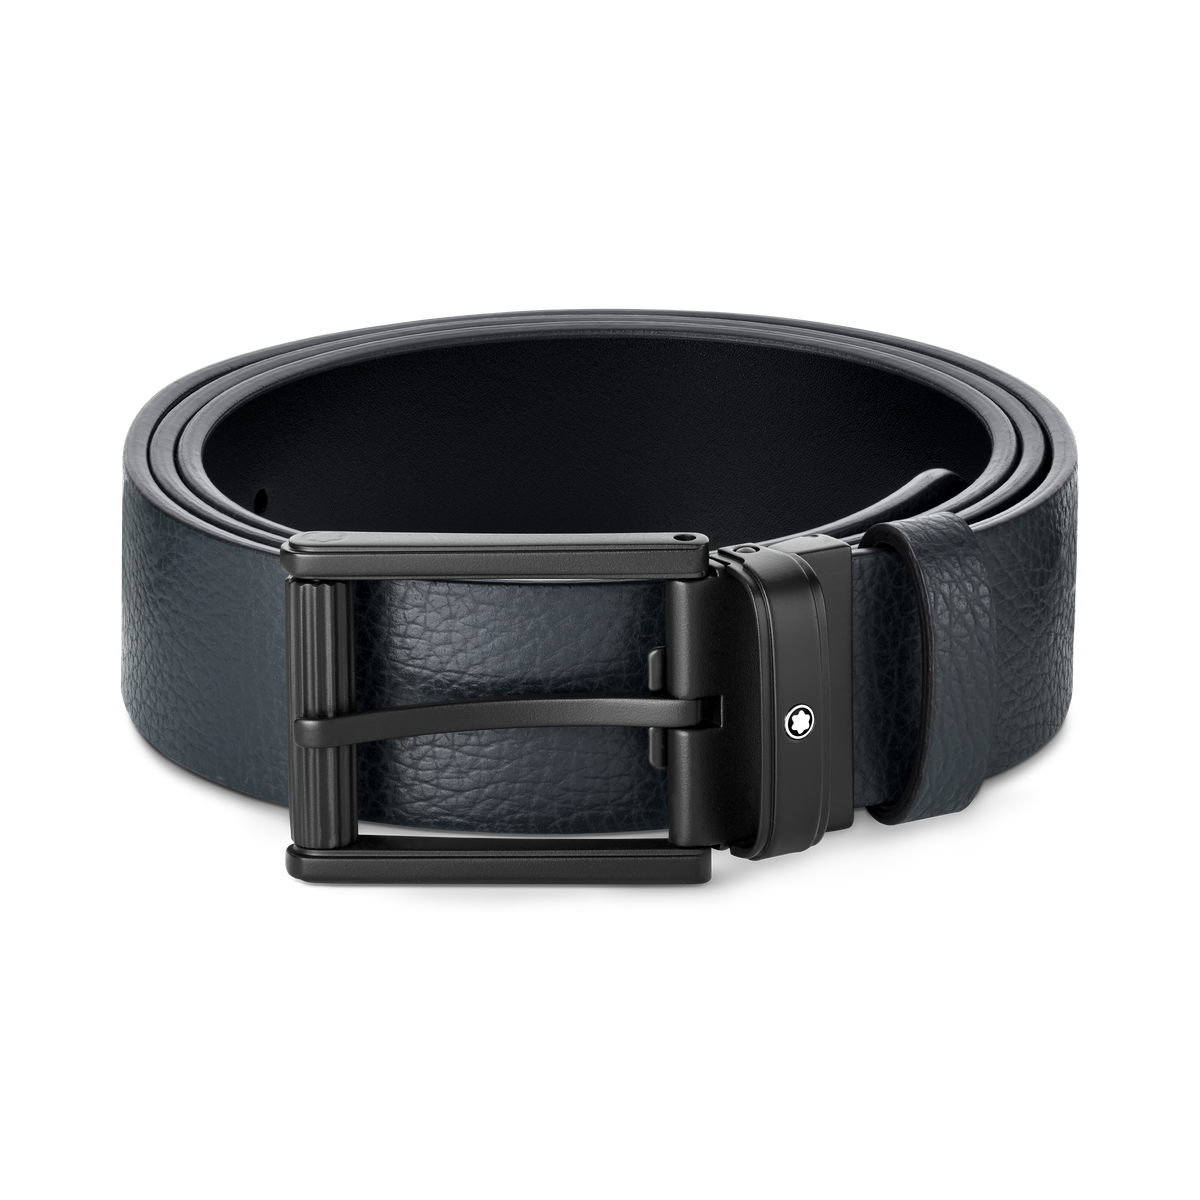 Blue/black 35 mm reversible leather belt